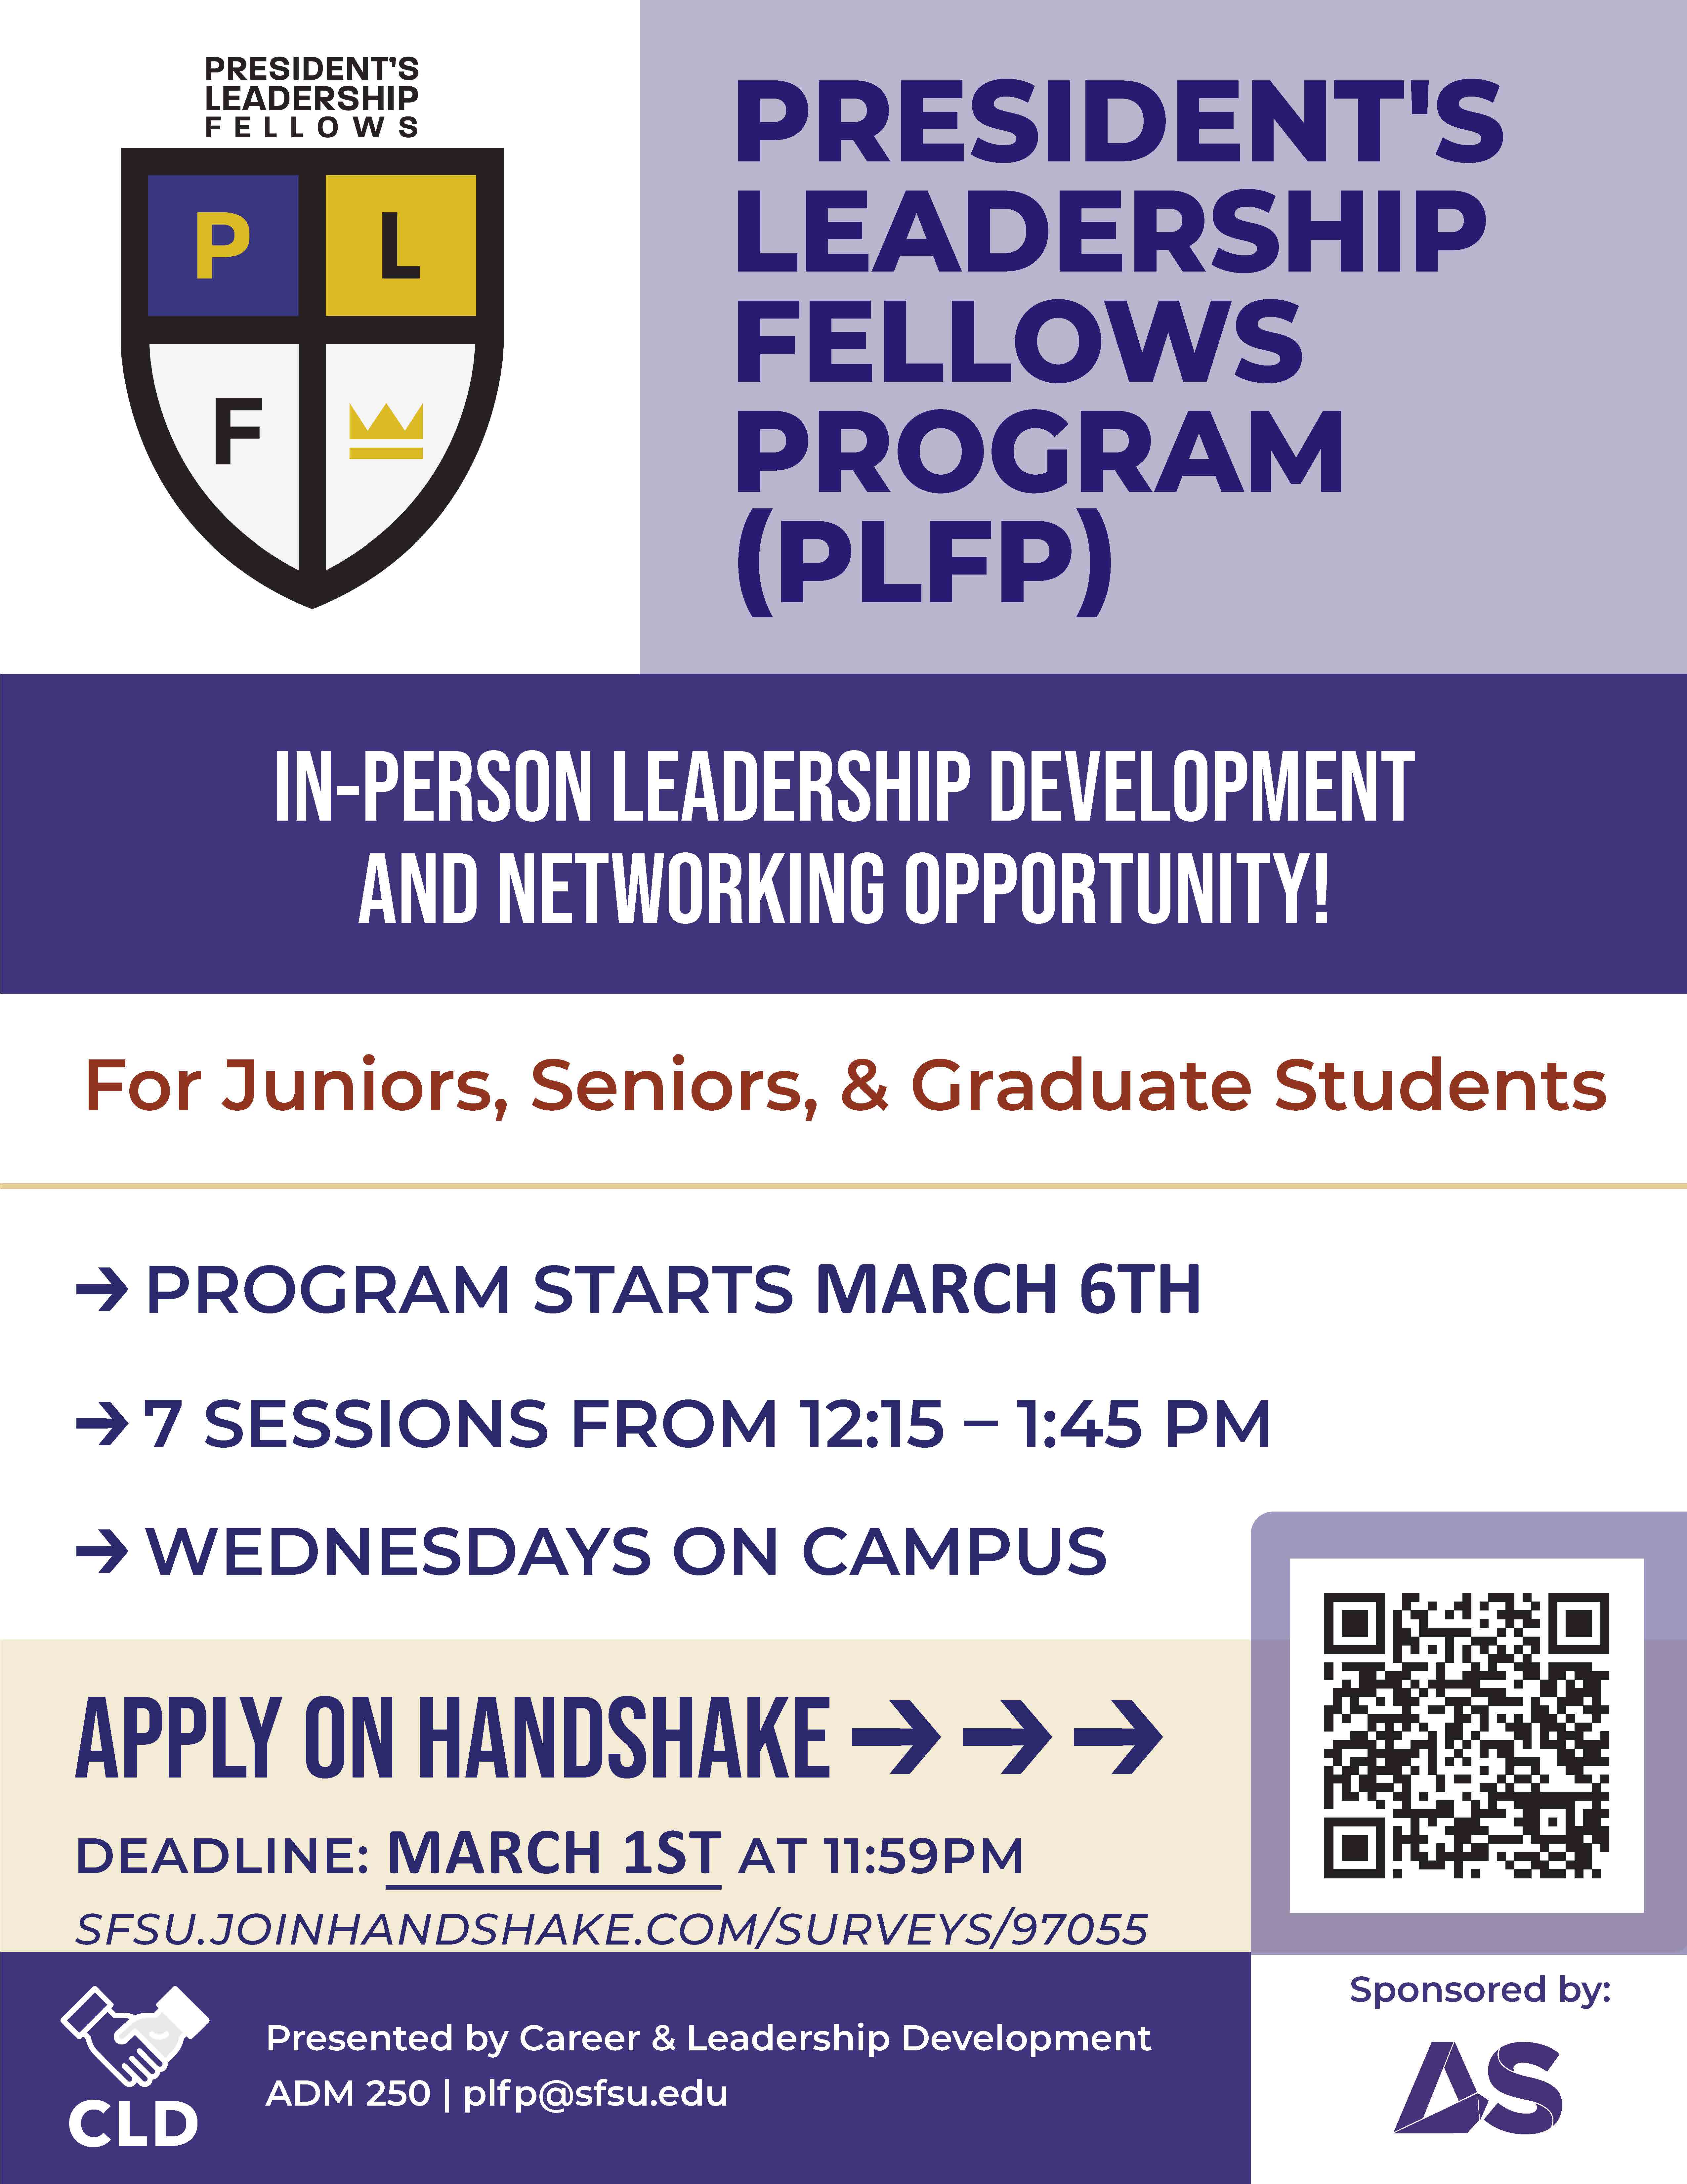 President's Leadership Fellows Program